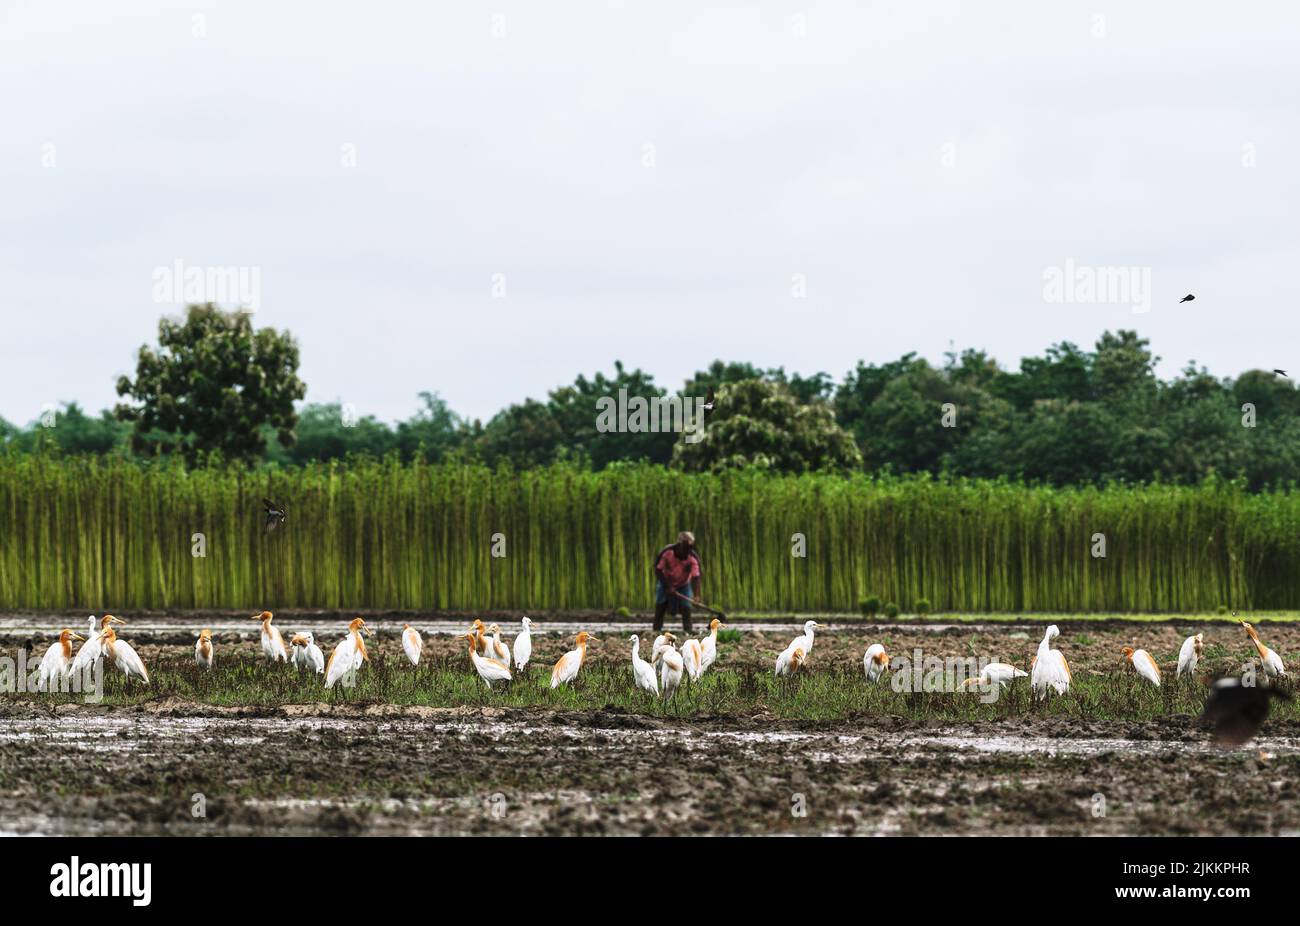 Ein Schwarm wilder Rinderreiher (Bubulcus ibis) fliegt und sitzt auf dem landwirtschaftlichen Feld, um Insekten zu fressen, die beim Pflügen aus dem Boden entstehen. Einige der Kuhreiher haben orange-braune Federn, die Gefieder züchten. Jhinuk Ghata, Westbengalen, Indien. Stockfoto